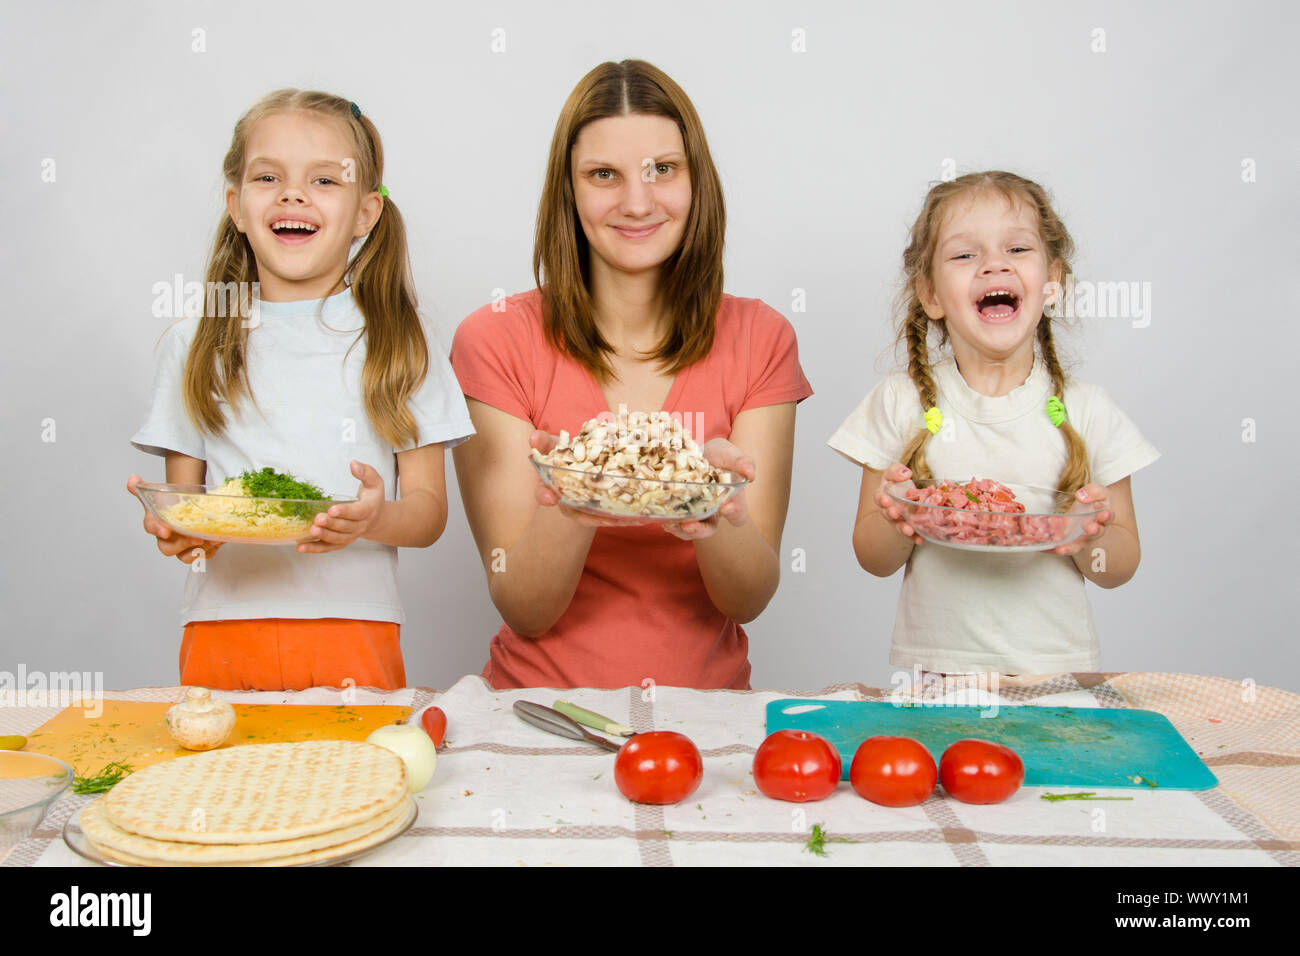 Mère de deux filles heureusement holding a plate avec des tranches de pizza pour produits Banque D'Images